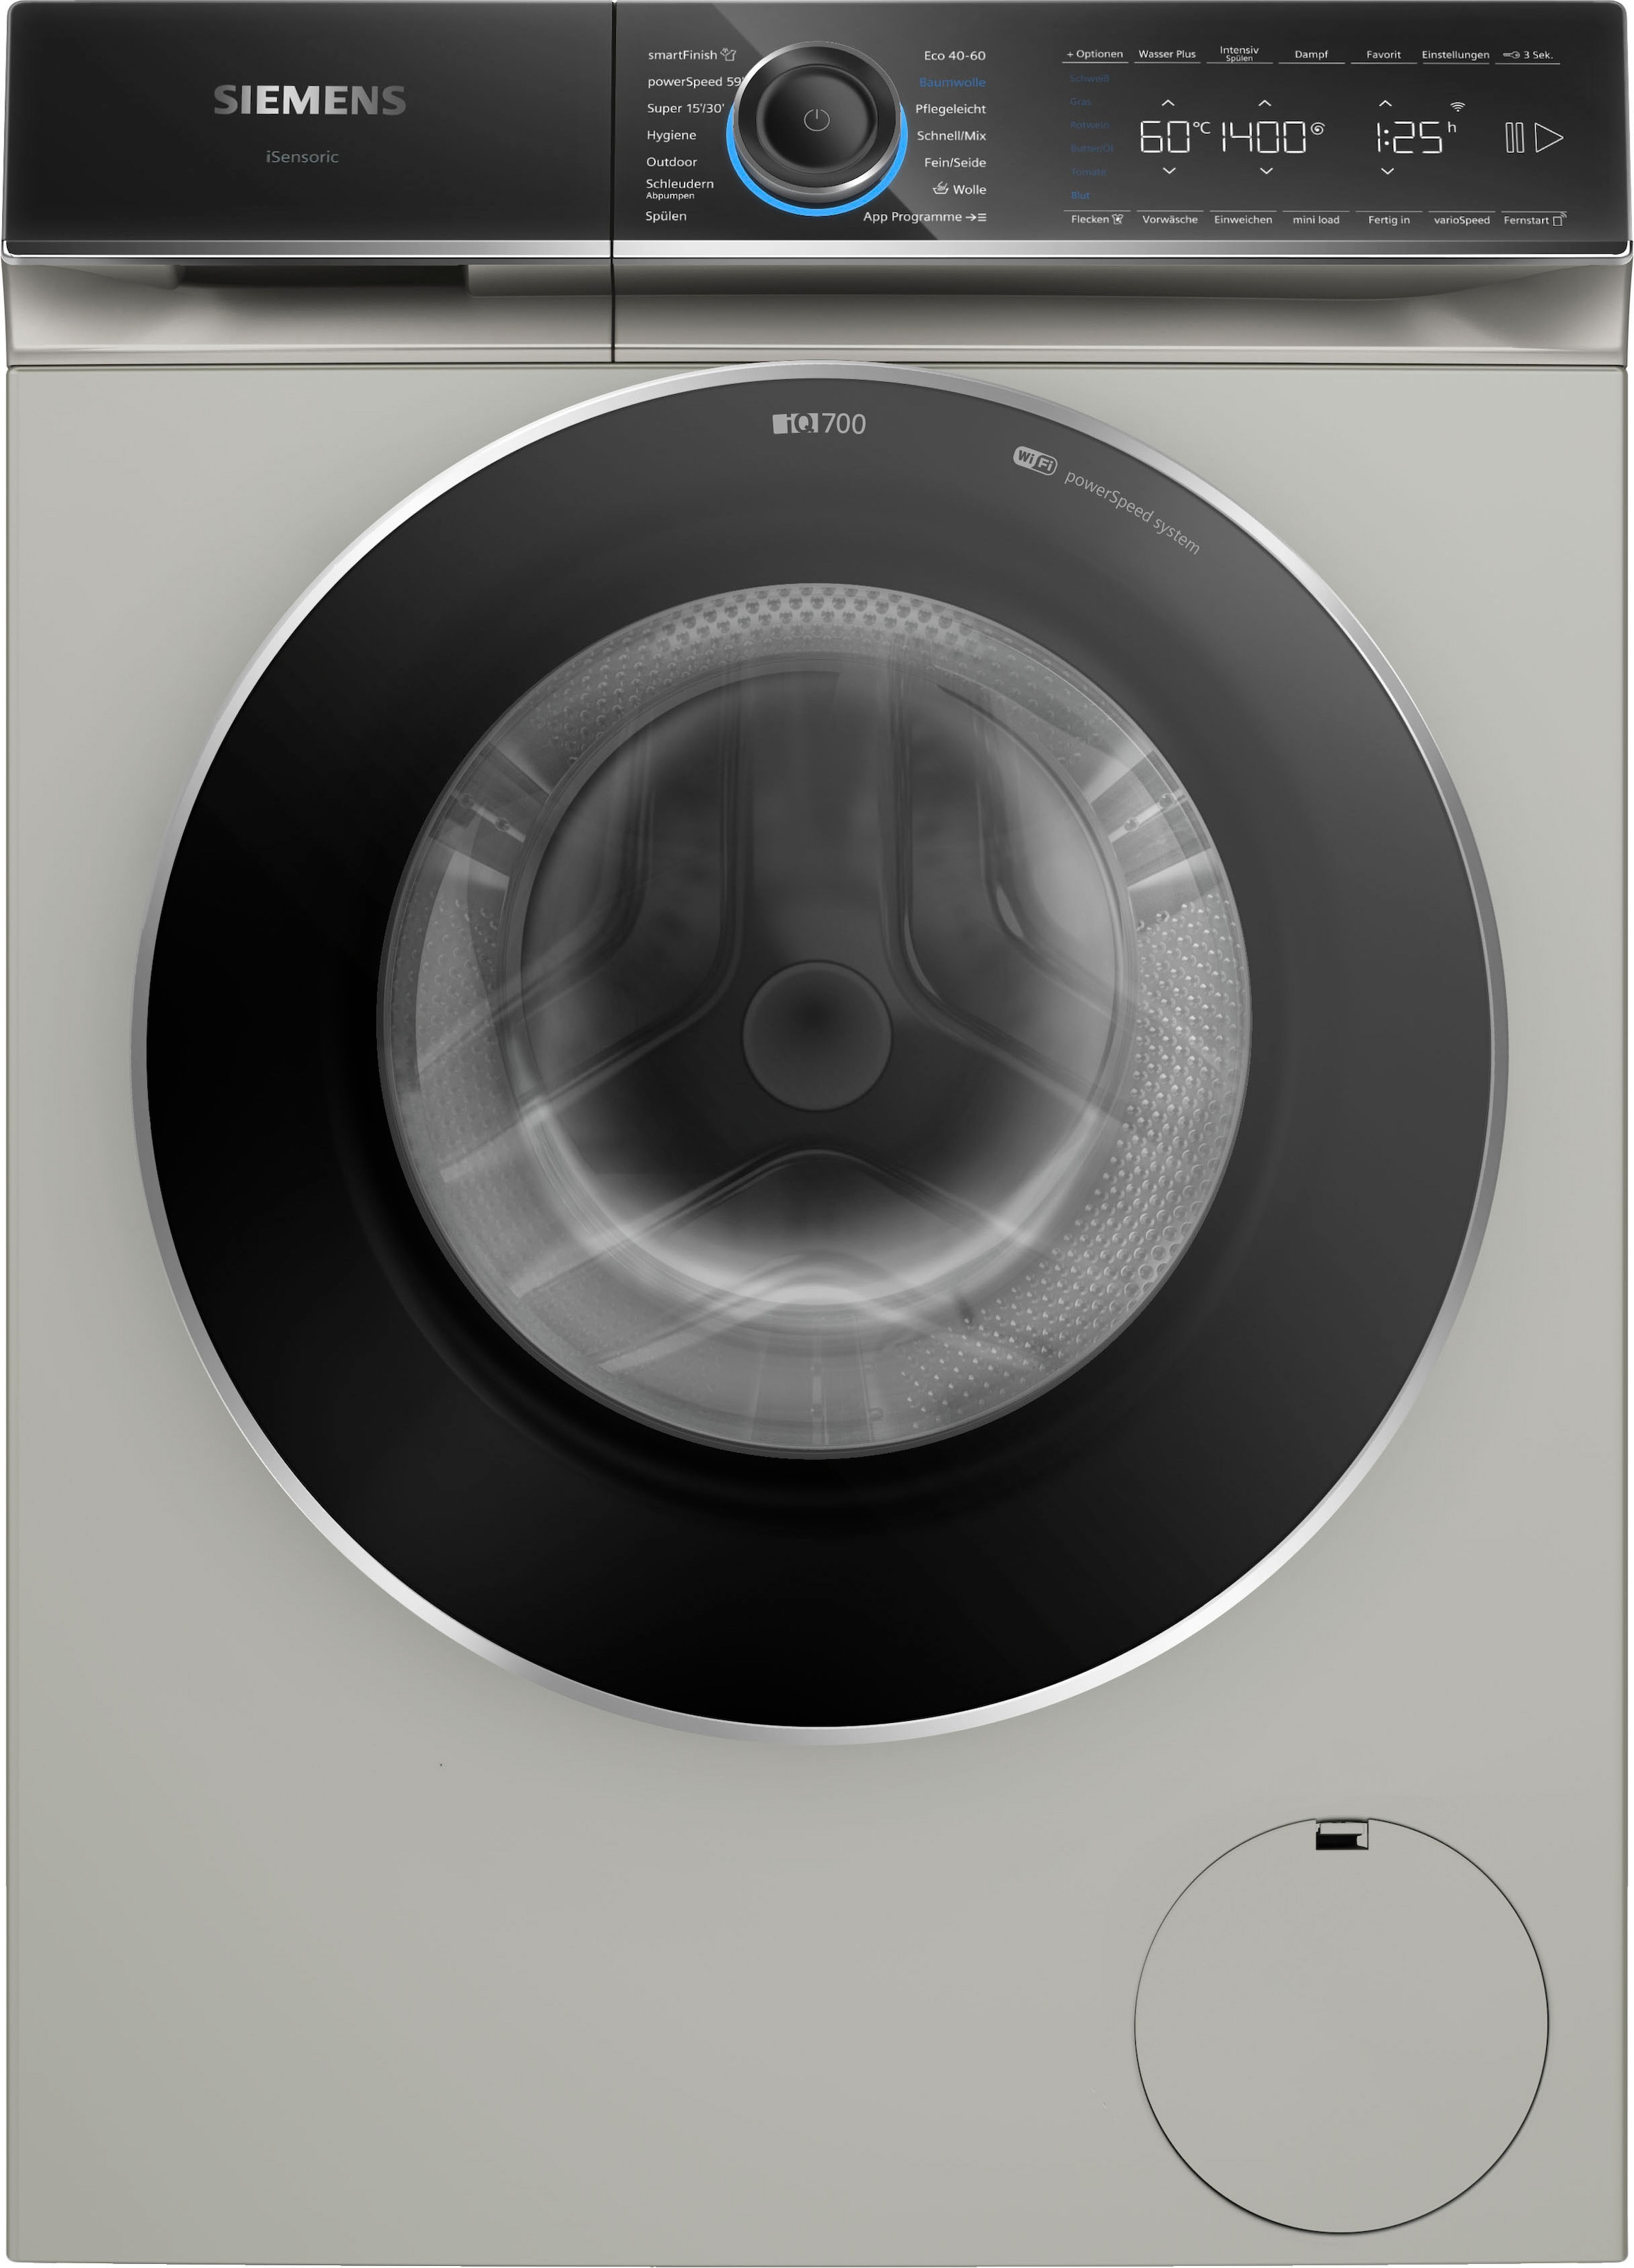 SIEMENS Waschmaschine smartFinish – 9 OTTO 1400 WG44B20X40, U/min, Knitterfalten dank »WG44B20X40«, bei kg, Dampf glättet sämtliche